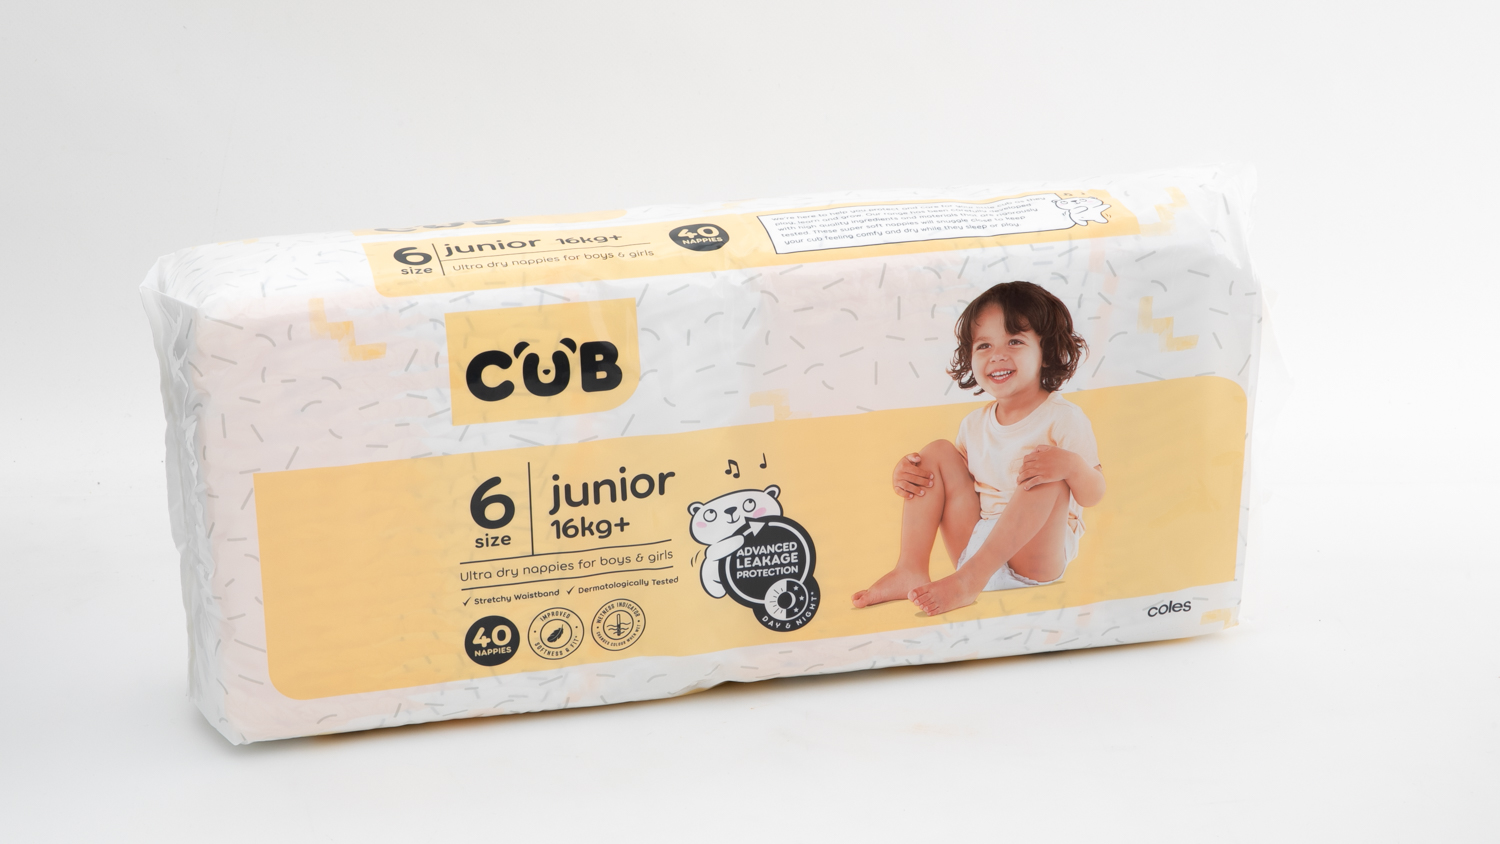 Coles CUB Junior Size 6 carousel image